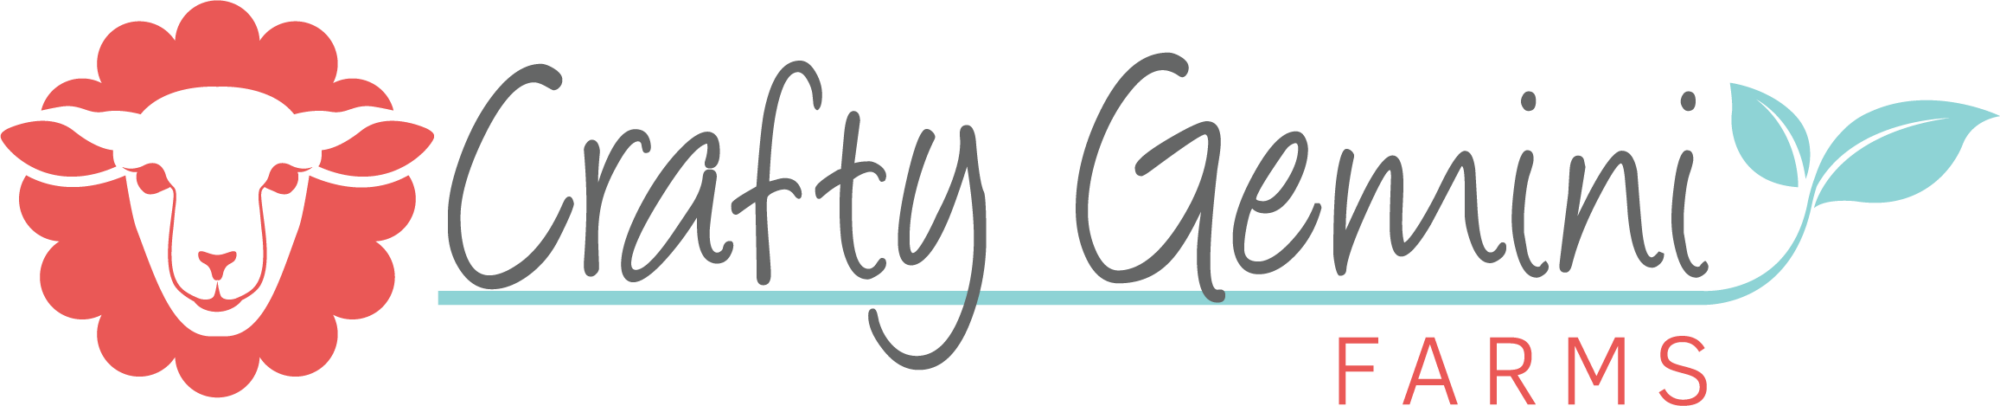 crafty gemini farms banner logo